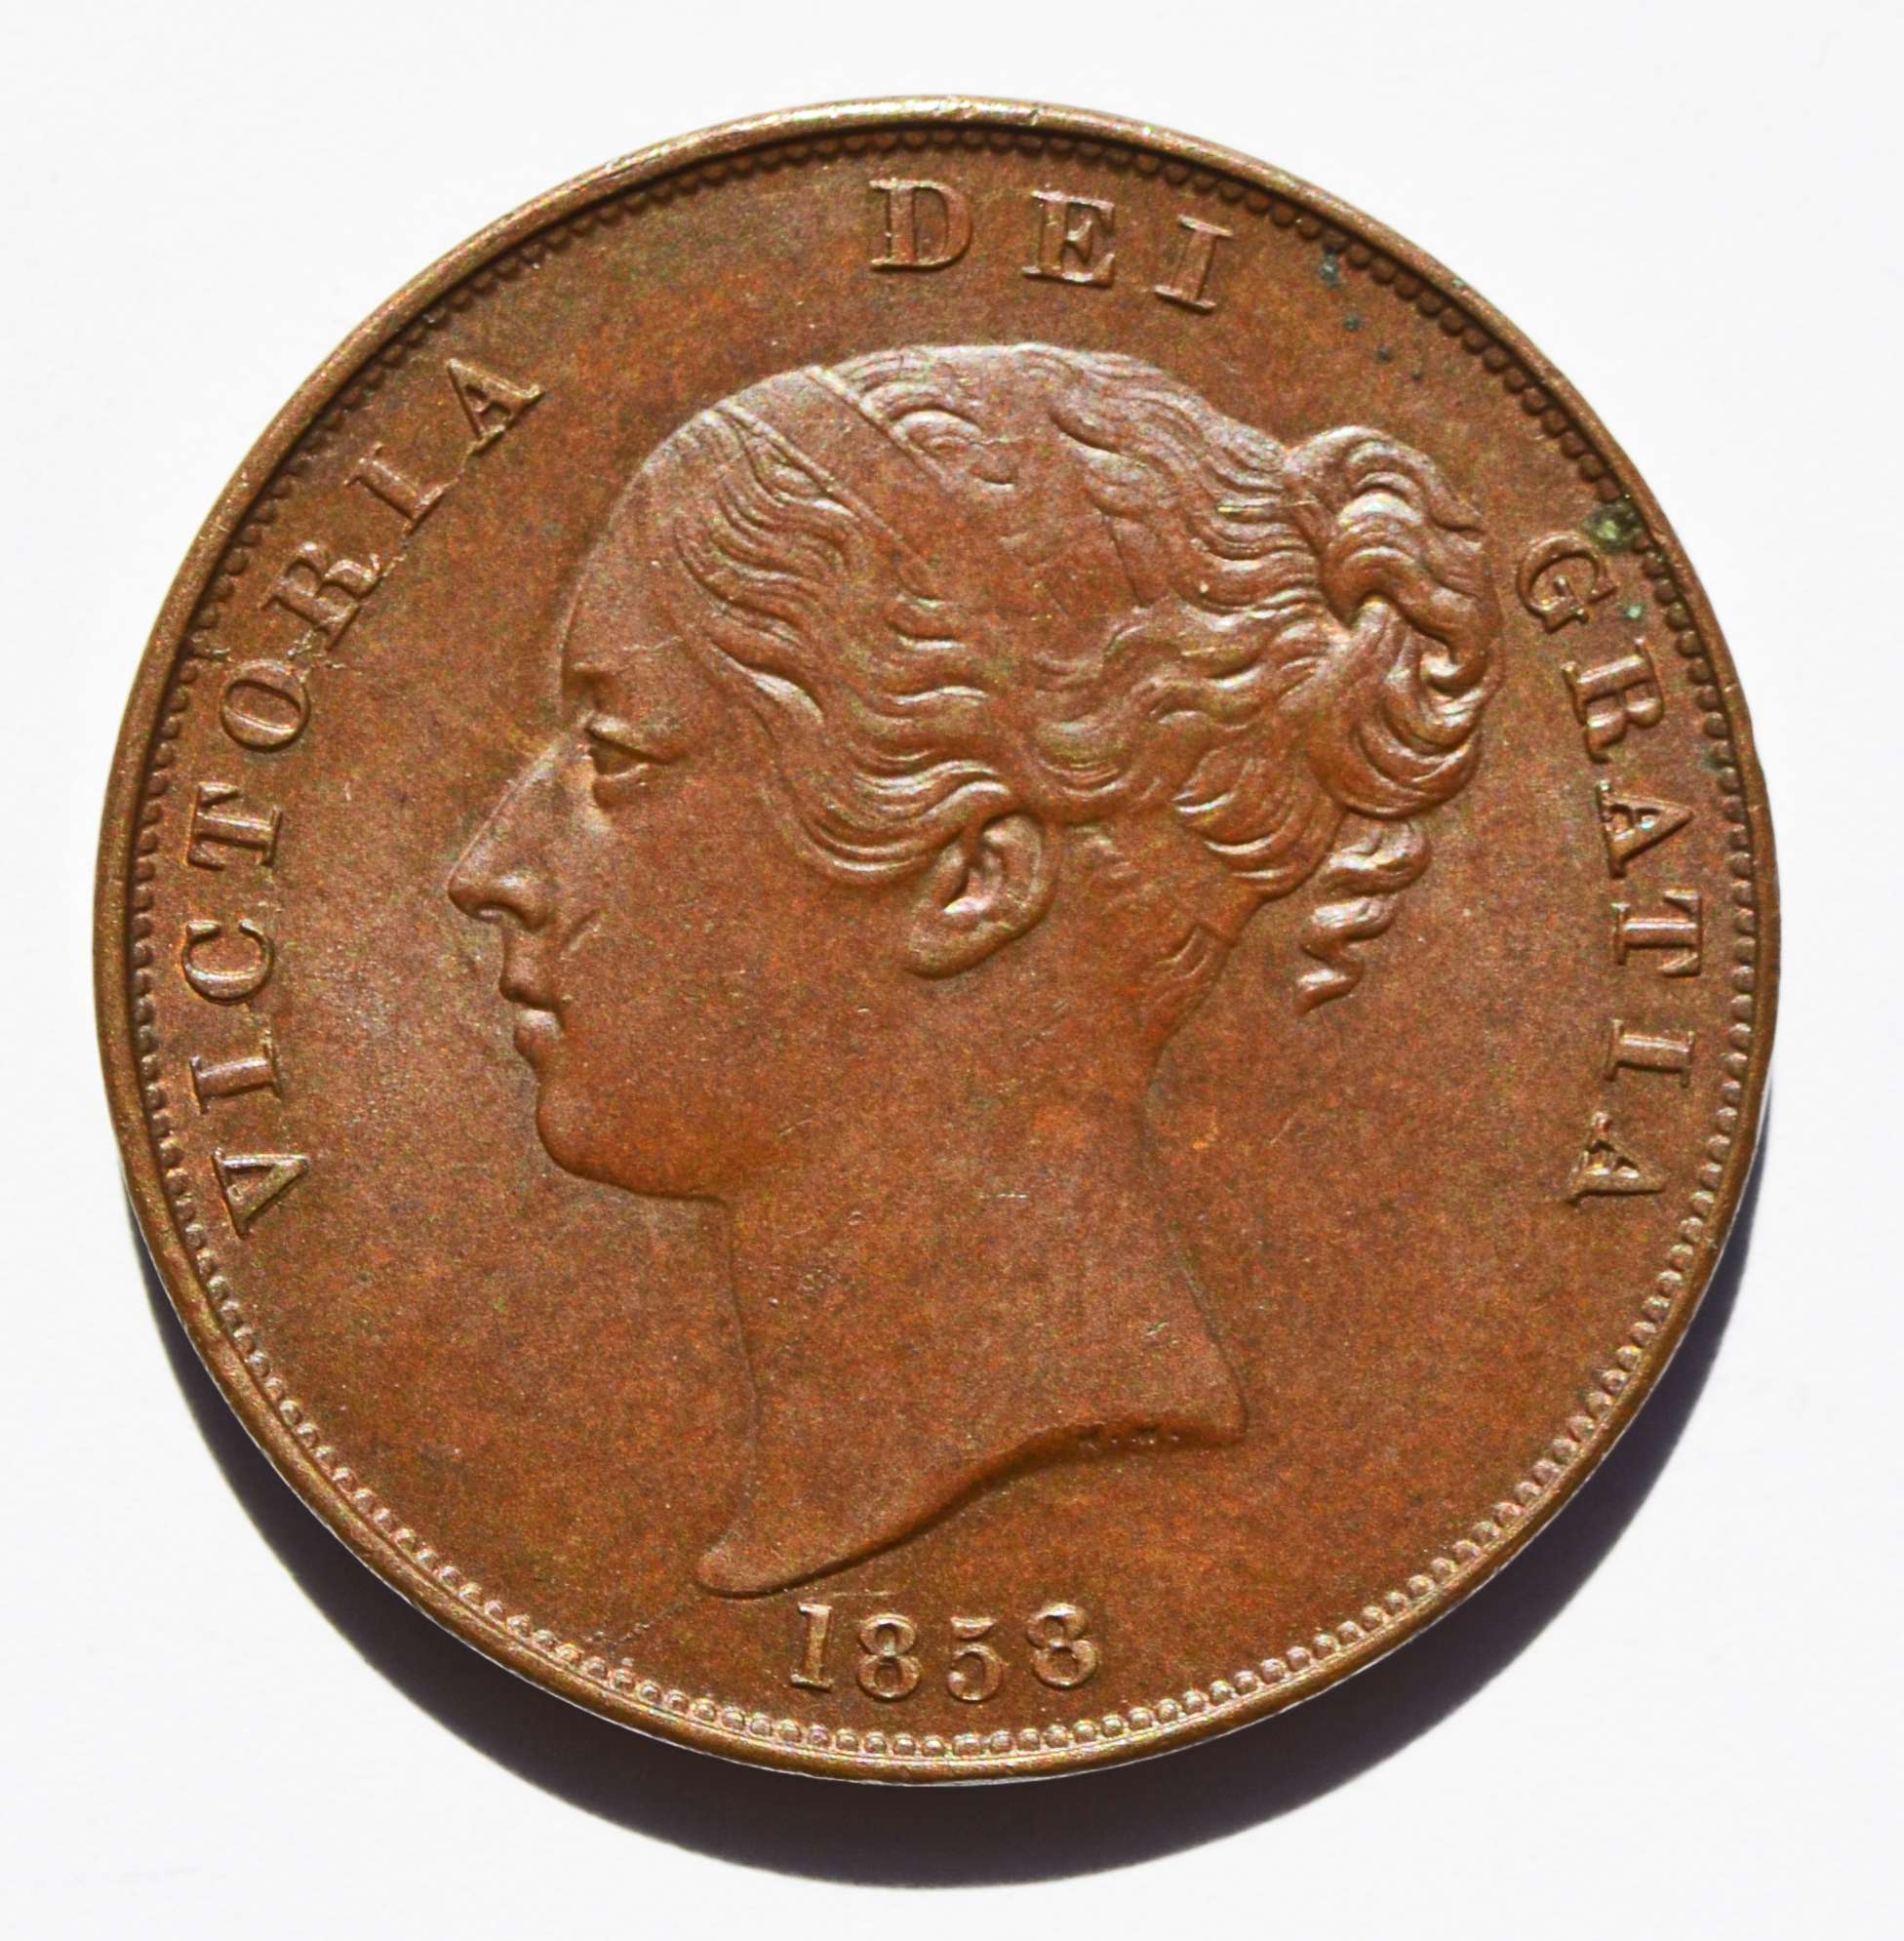 antique copper coins